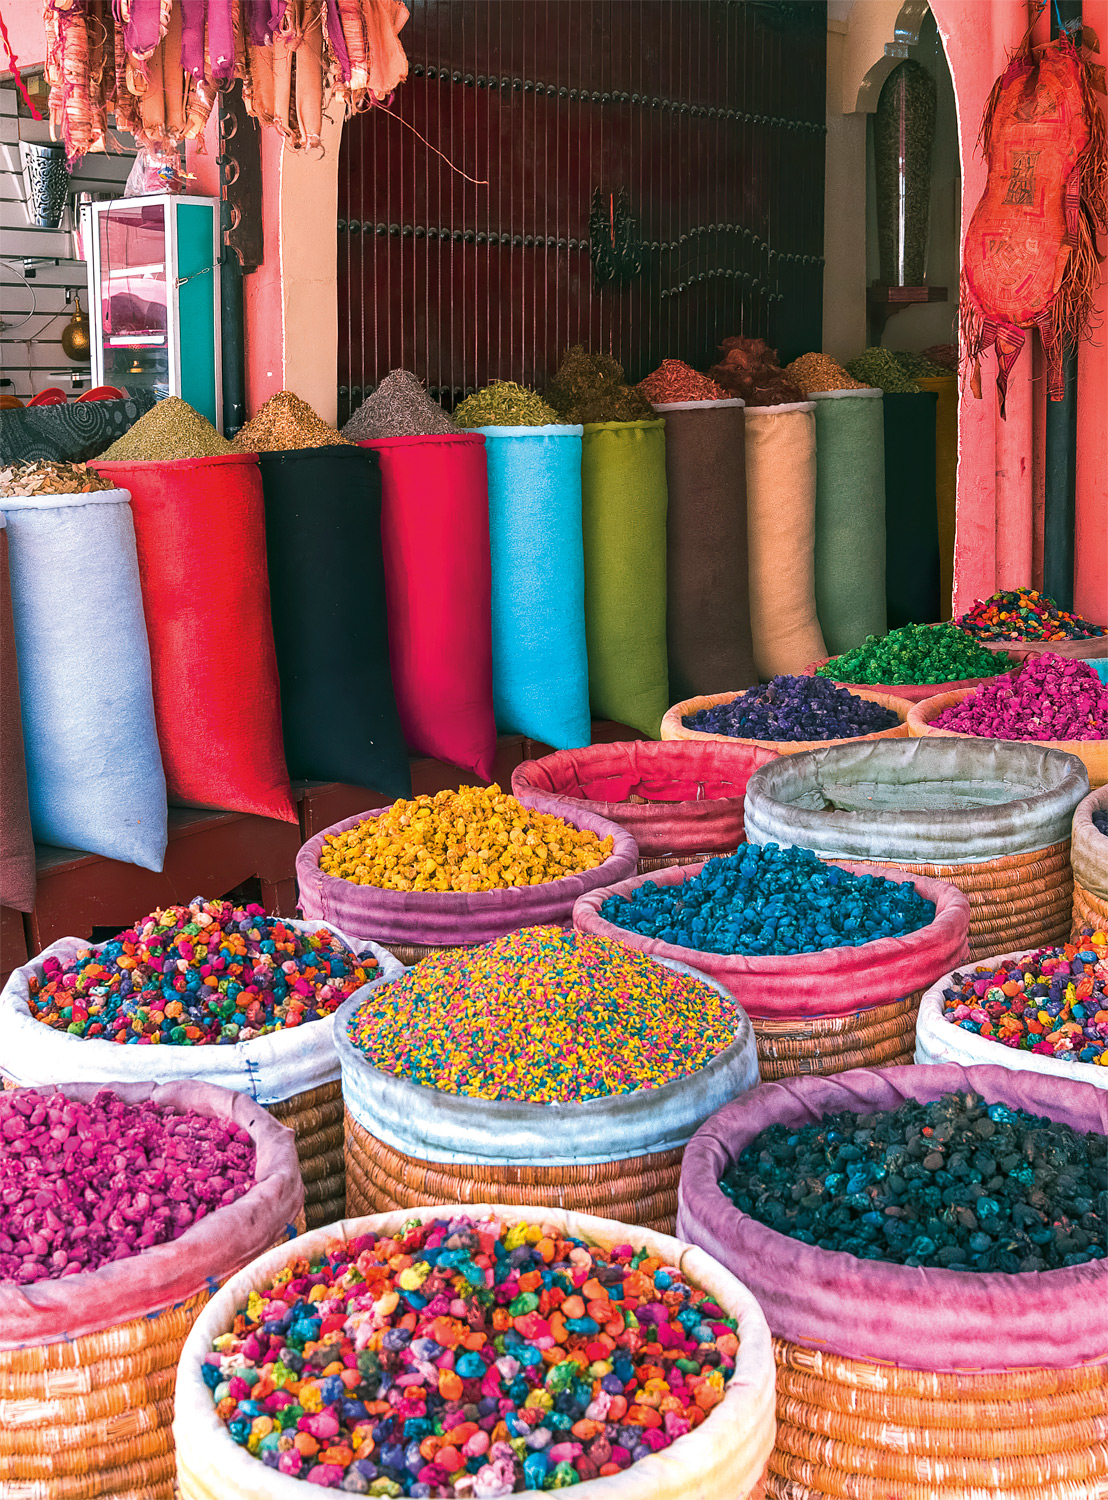 Colores de Marrakech Travel Jigsaw Puzzle